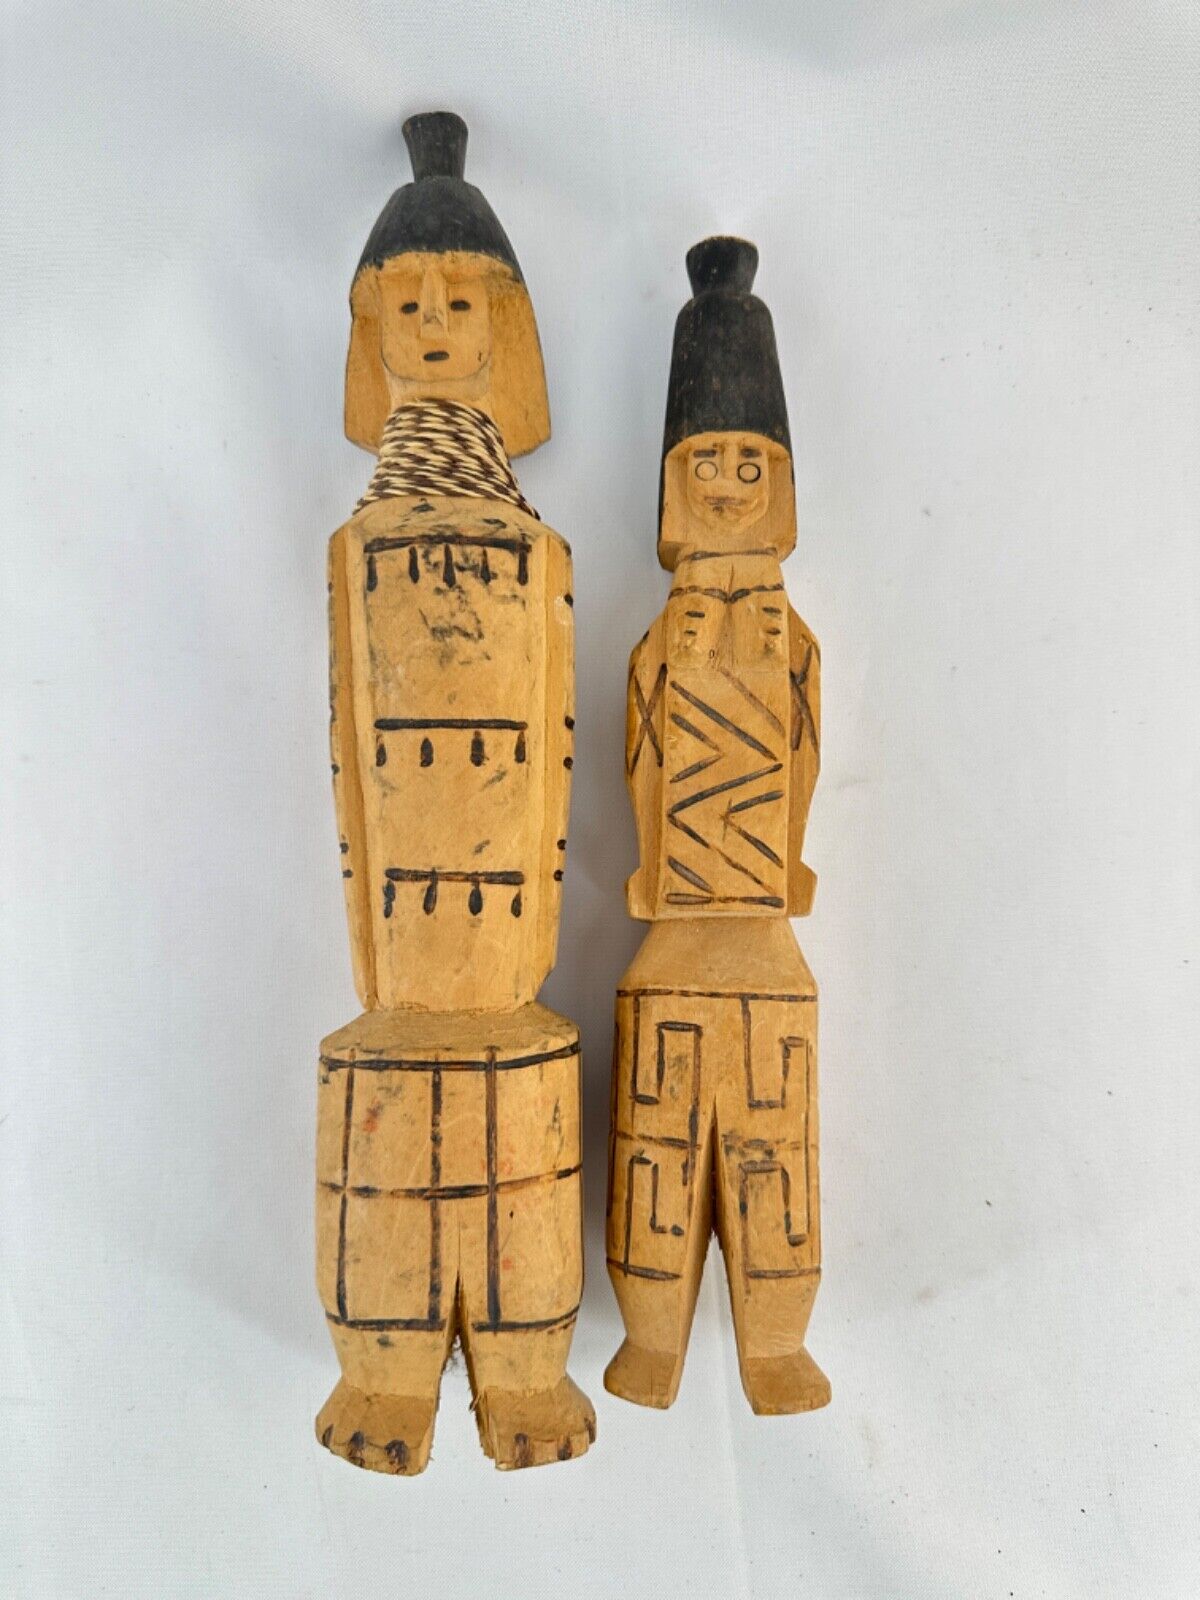 2 Brazil Wood Figures Statues Dolls Amazon Tribal Indigenous Brazilian People